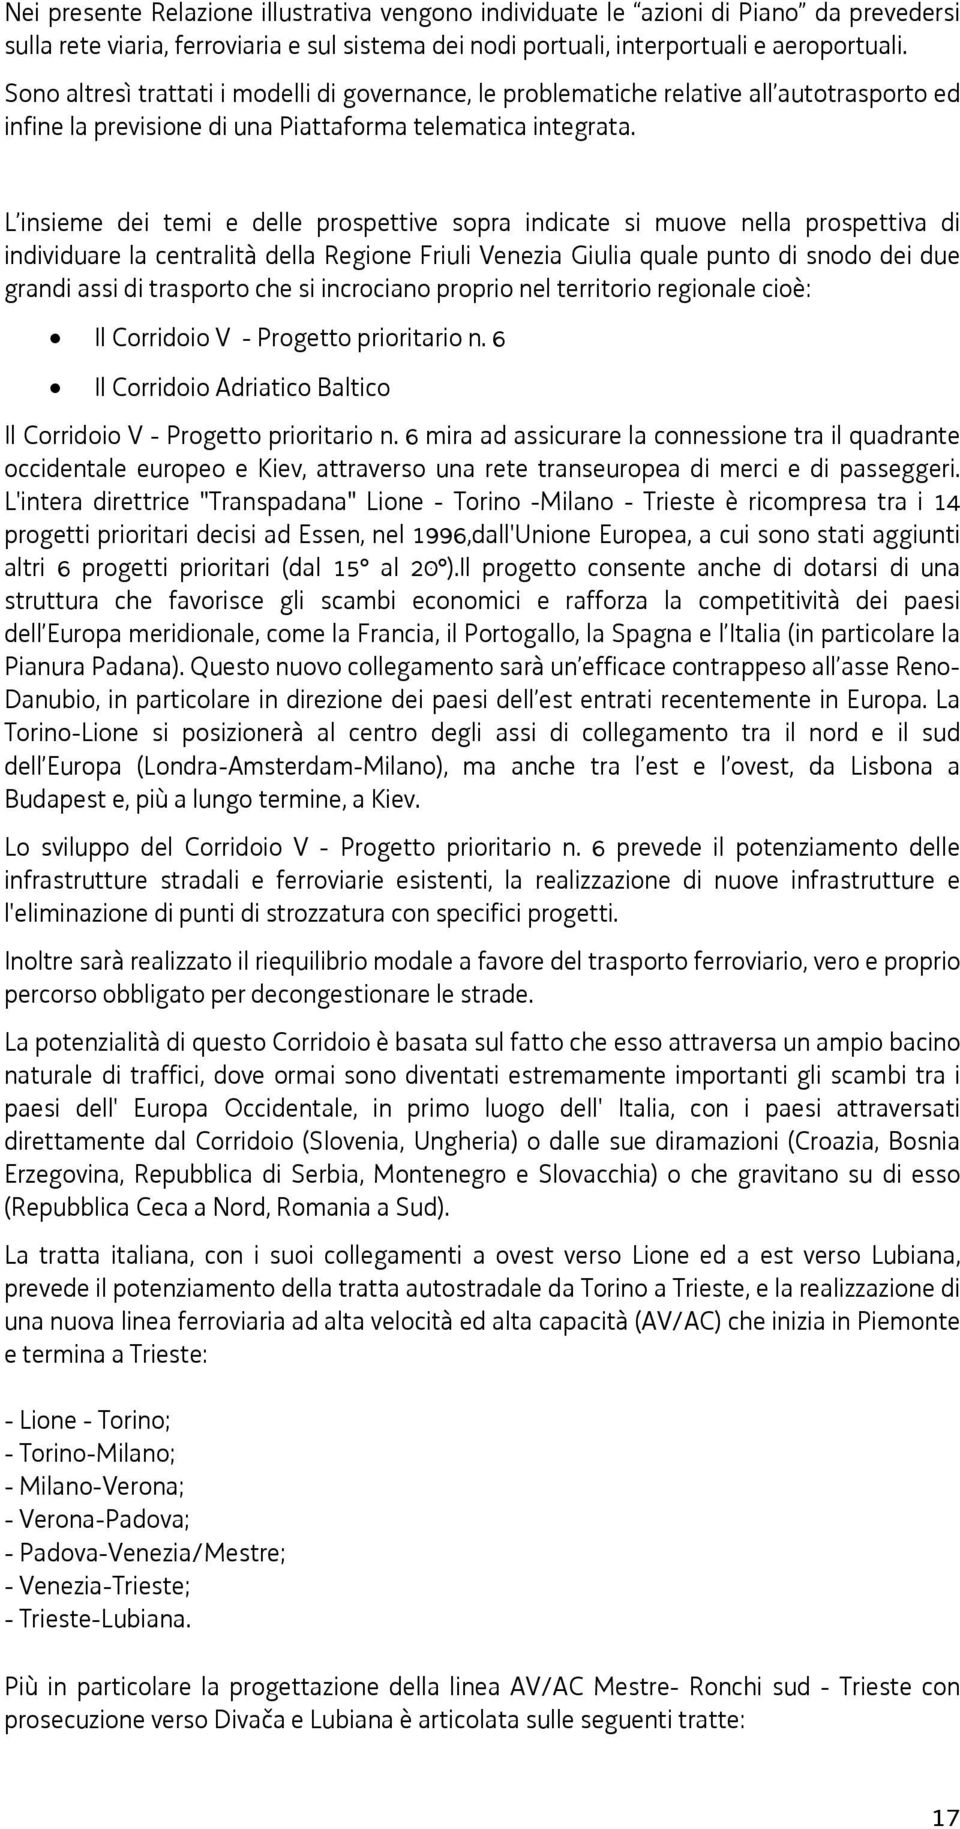 L insieme dei temi e delle prospettive sopra indicate si muove nella prospettiva di individuare la centralità della Regione Friuli Venezia Giulia quale punto di snodo dei due grandi assi di trasporto